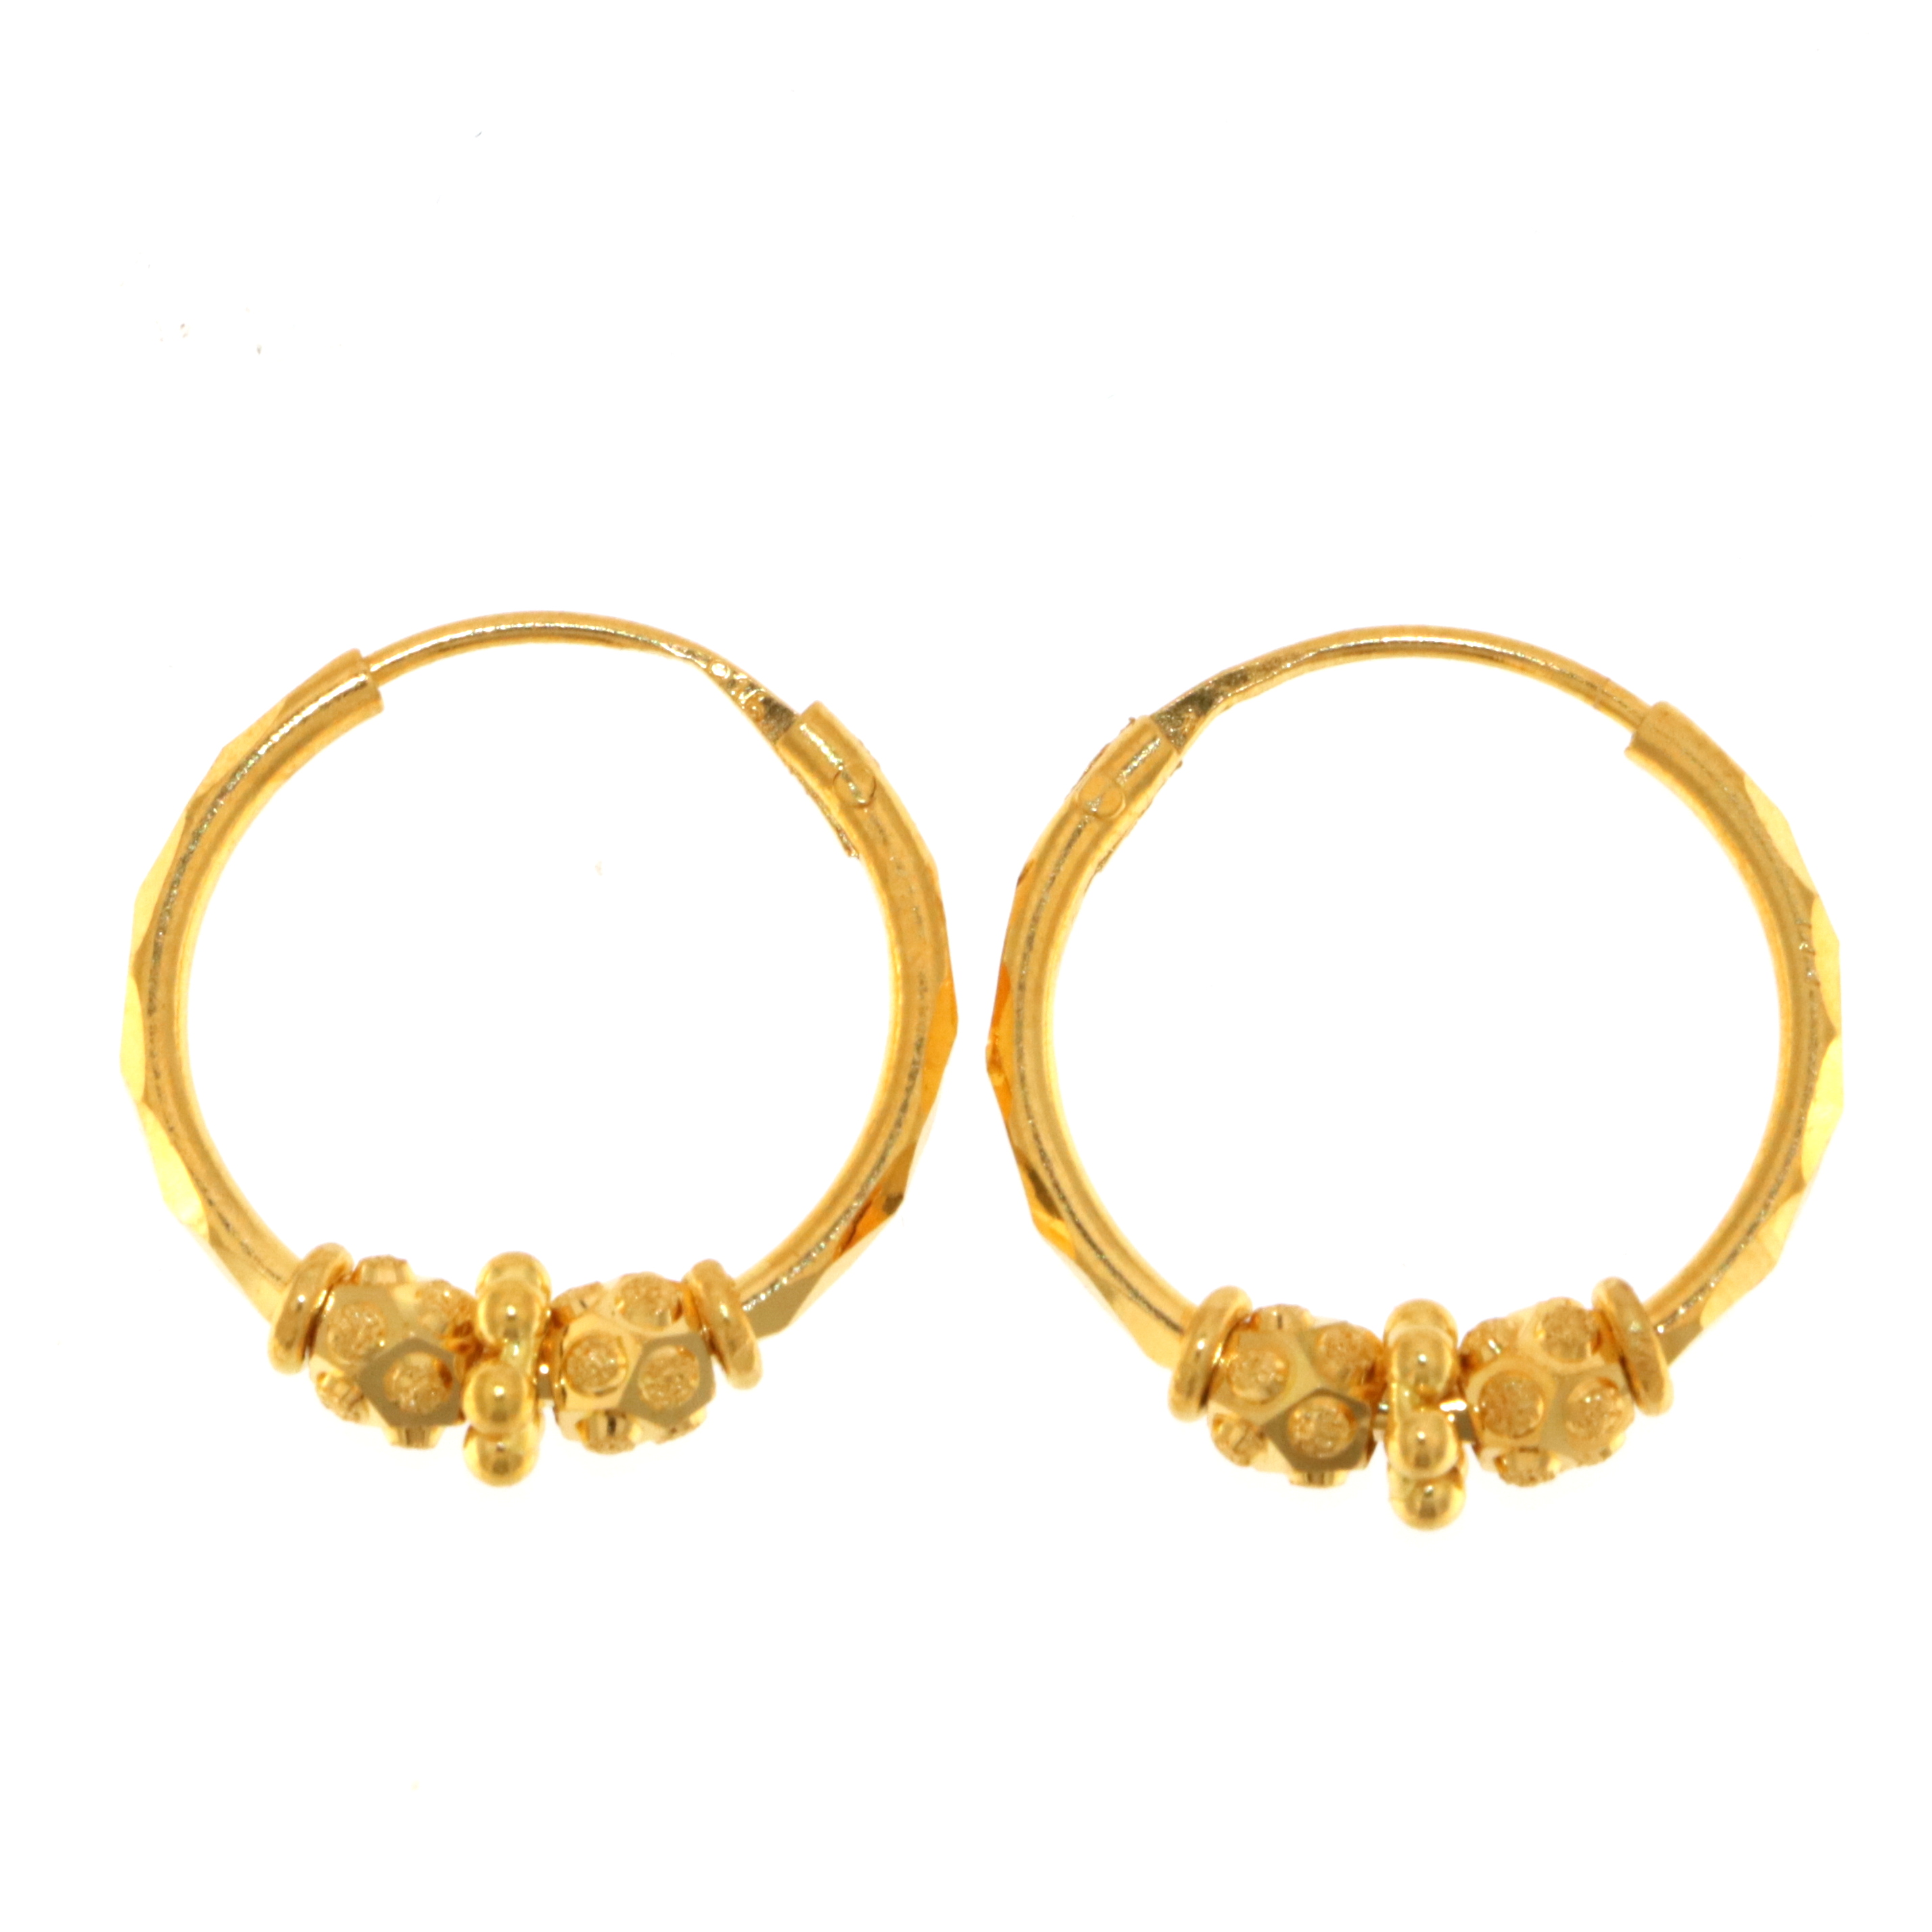 22ct Gold Hoop Earrings